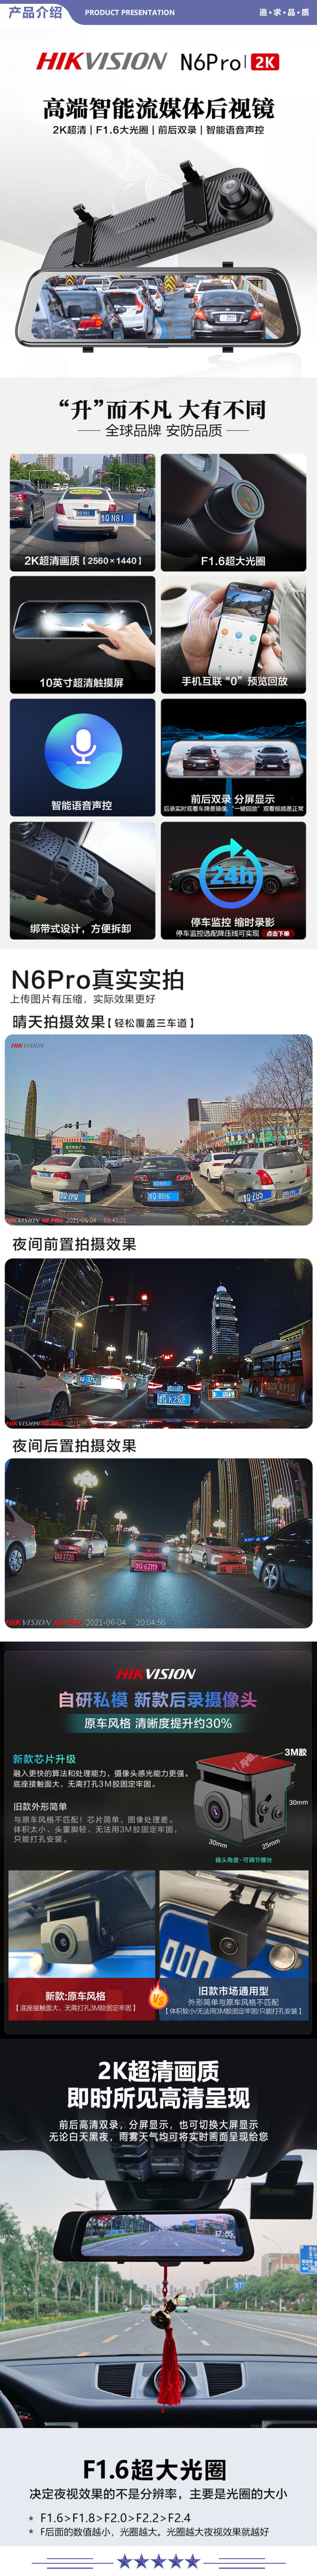 海康威视 N6Pro 行车记录仪 2K超清夜视前后双录 流媒体后视镜倒车影像 智能语音10英寸触摸屏64G版 2.jpg